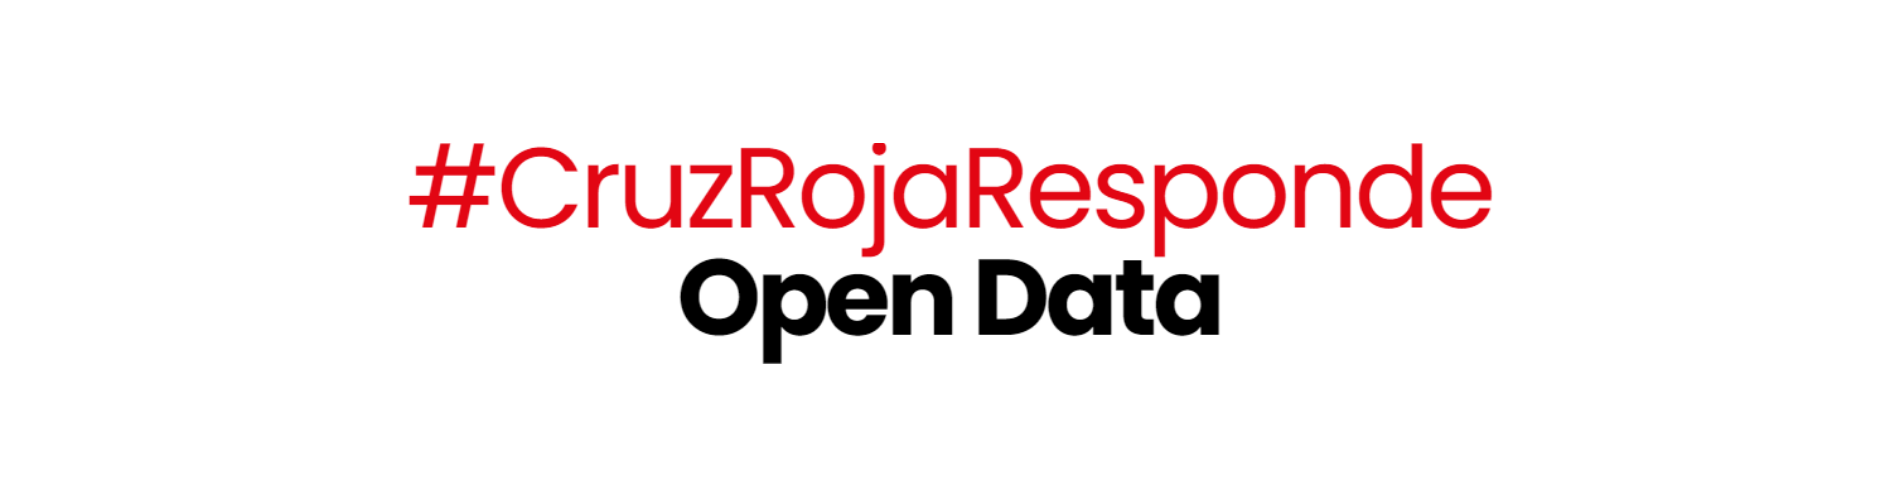 Open data: así muestra su transparencia Cruz Roja en su Plan RESPONDE